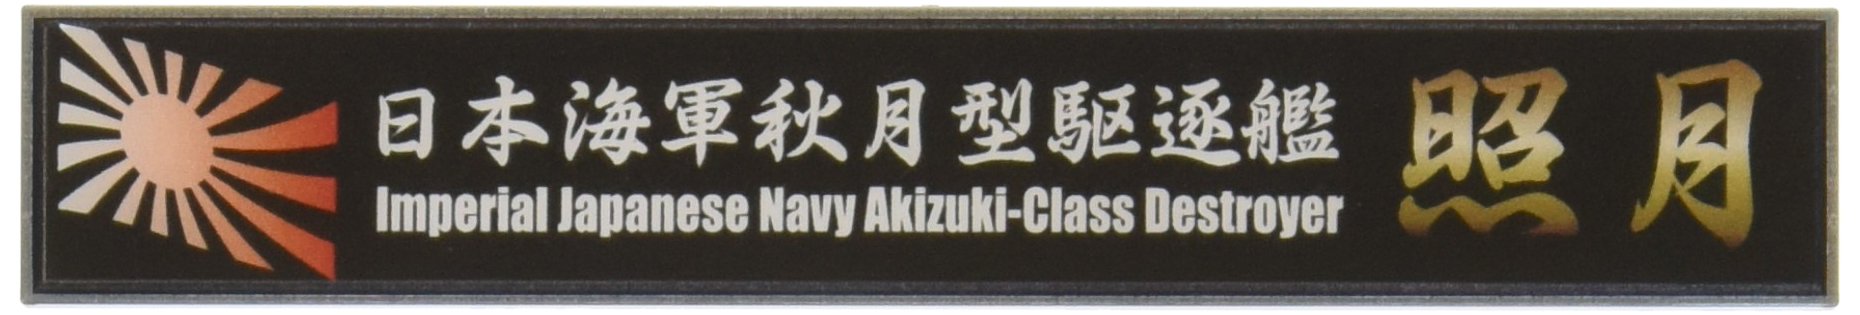 FUJIMI Ship Name Plate Series No.111 Ijn Akizuki-Class Destroyer Teruzuki